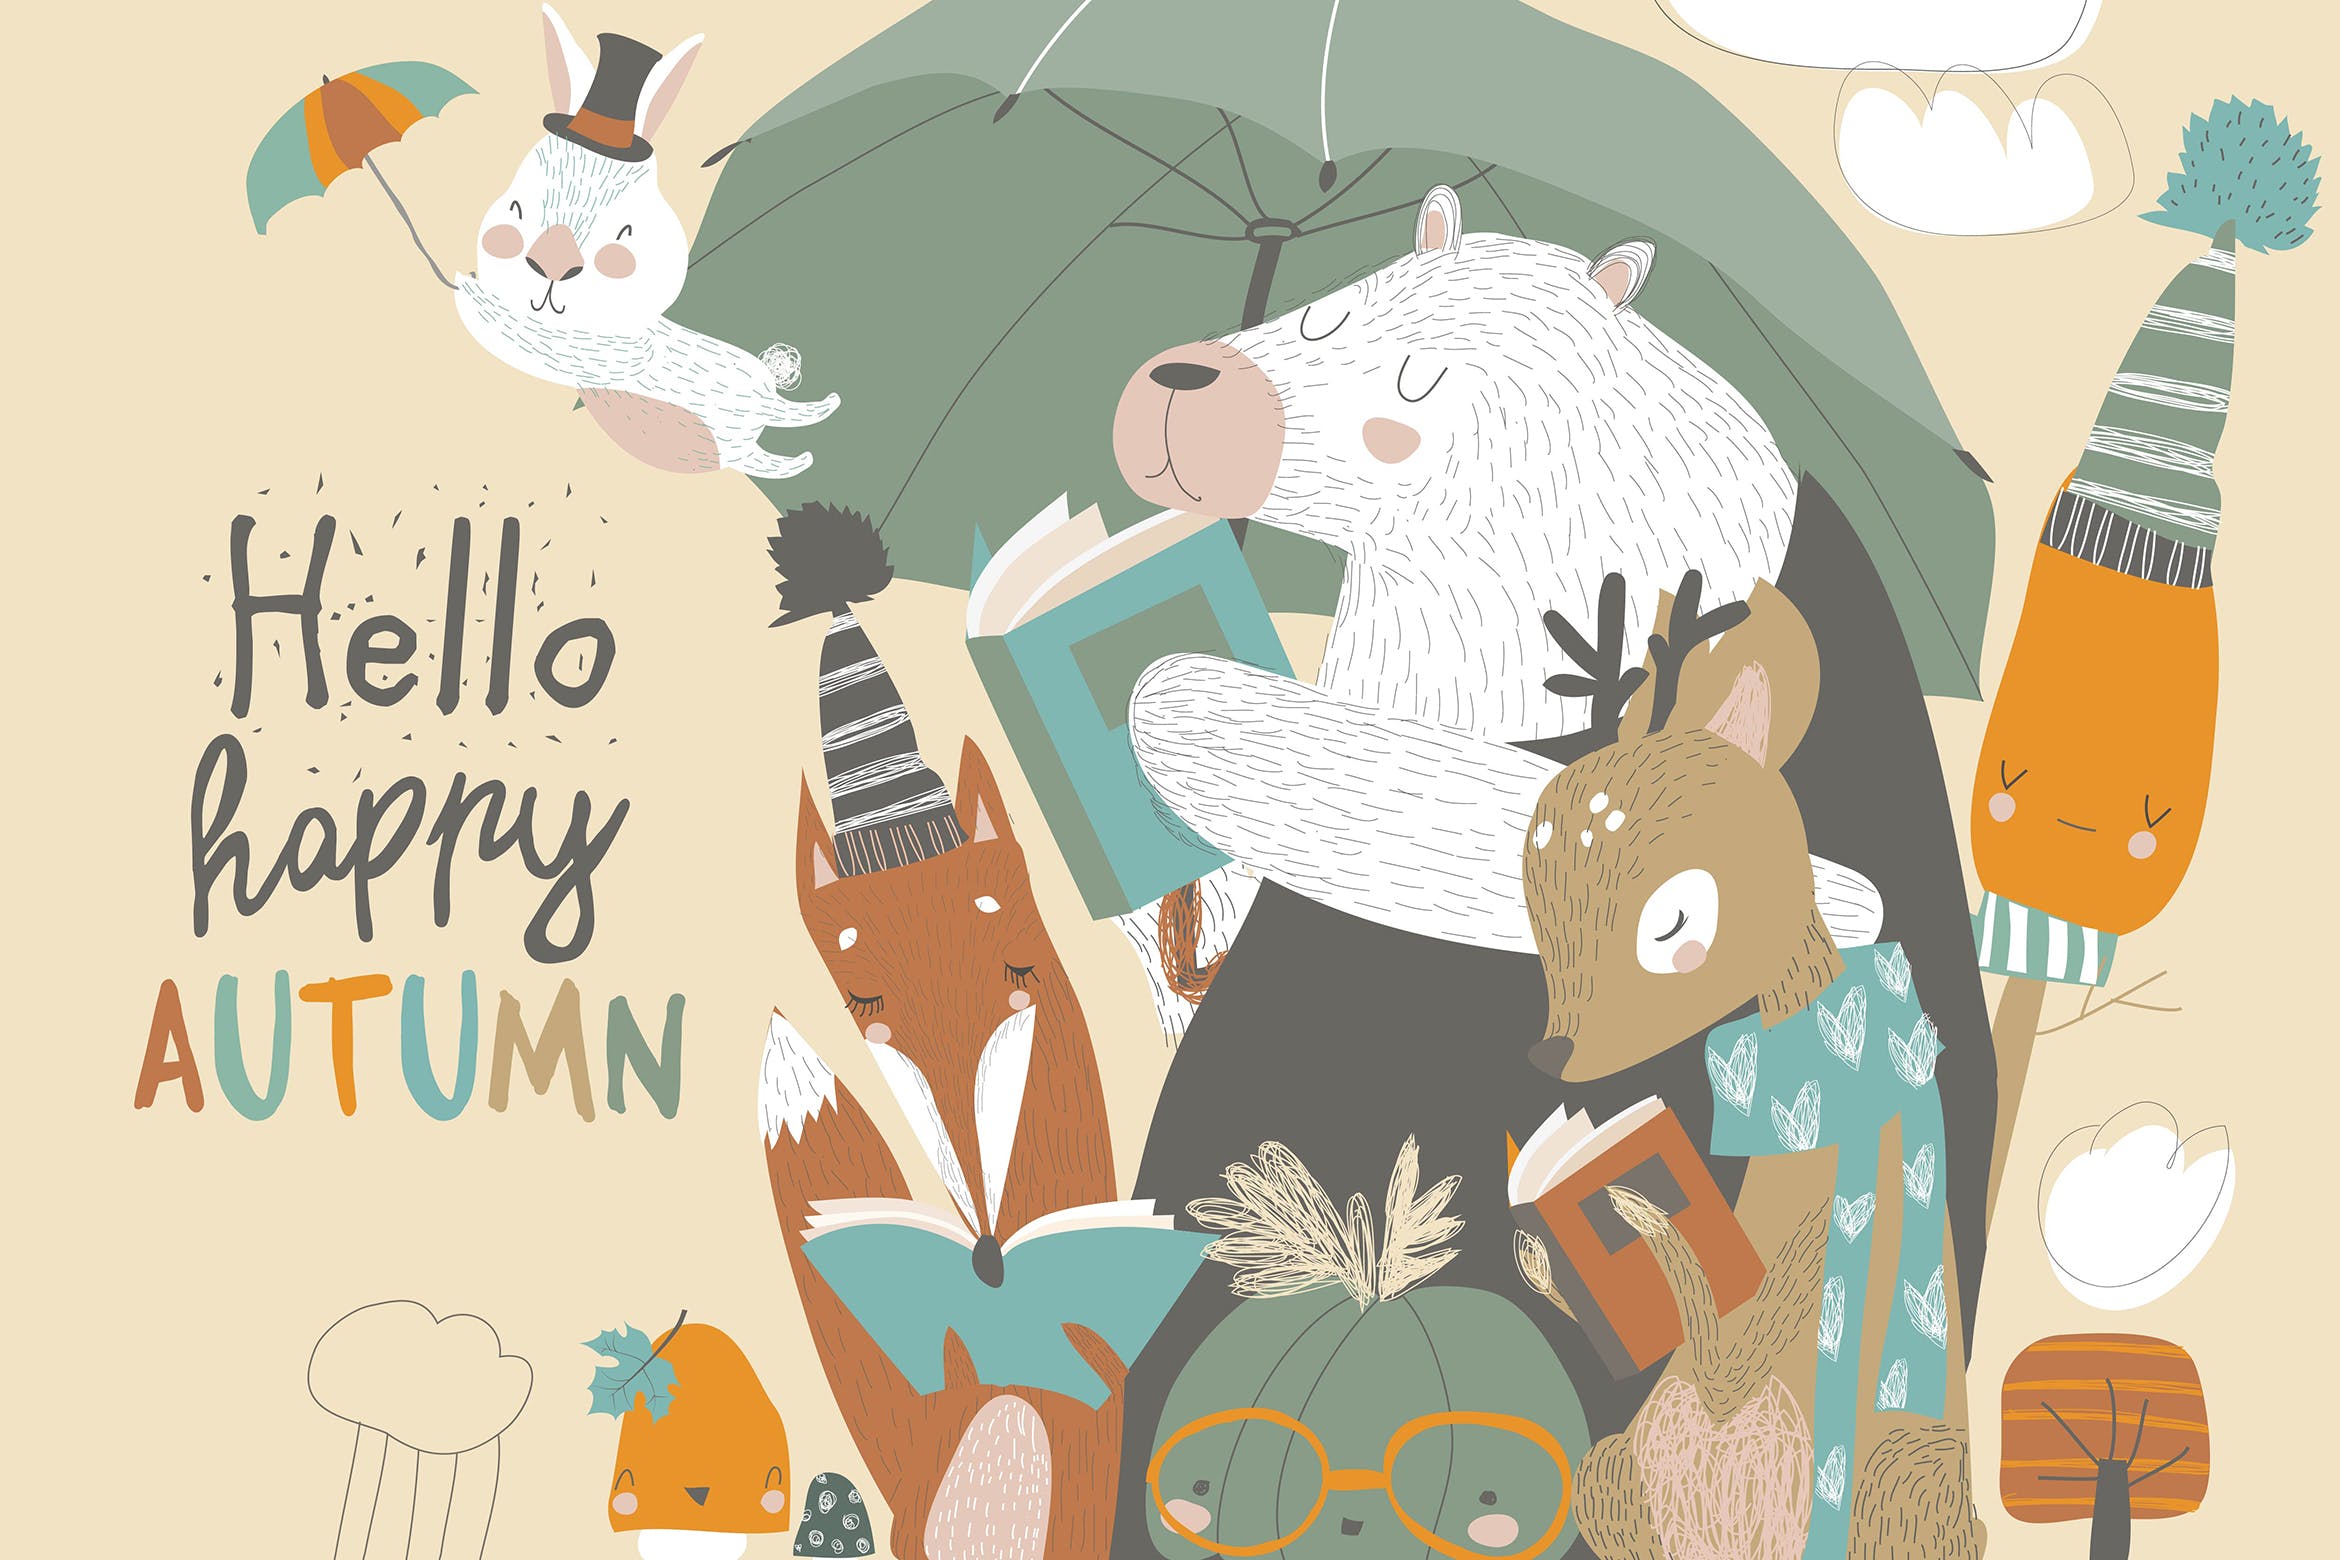 可爱的动物阅读场景素材库精选手绘插画矢量素材 Funny animals read books under umbrella. Autumn ti插图